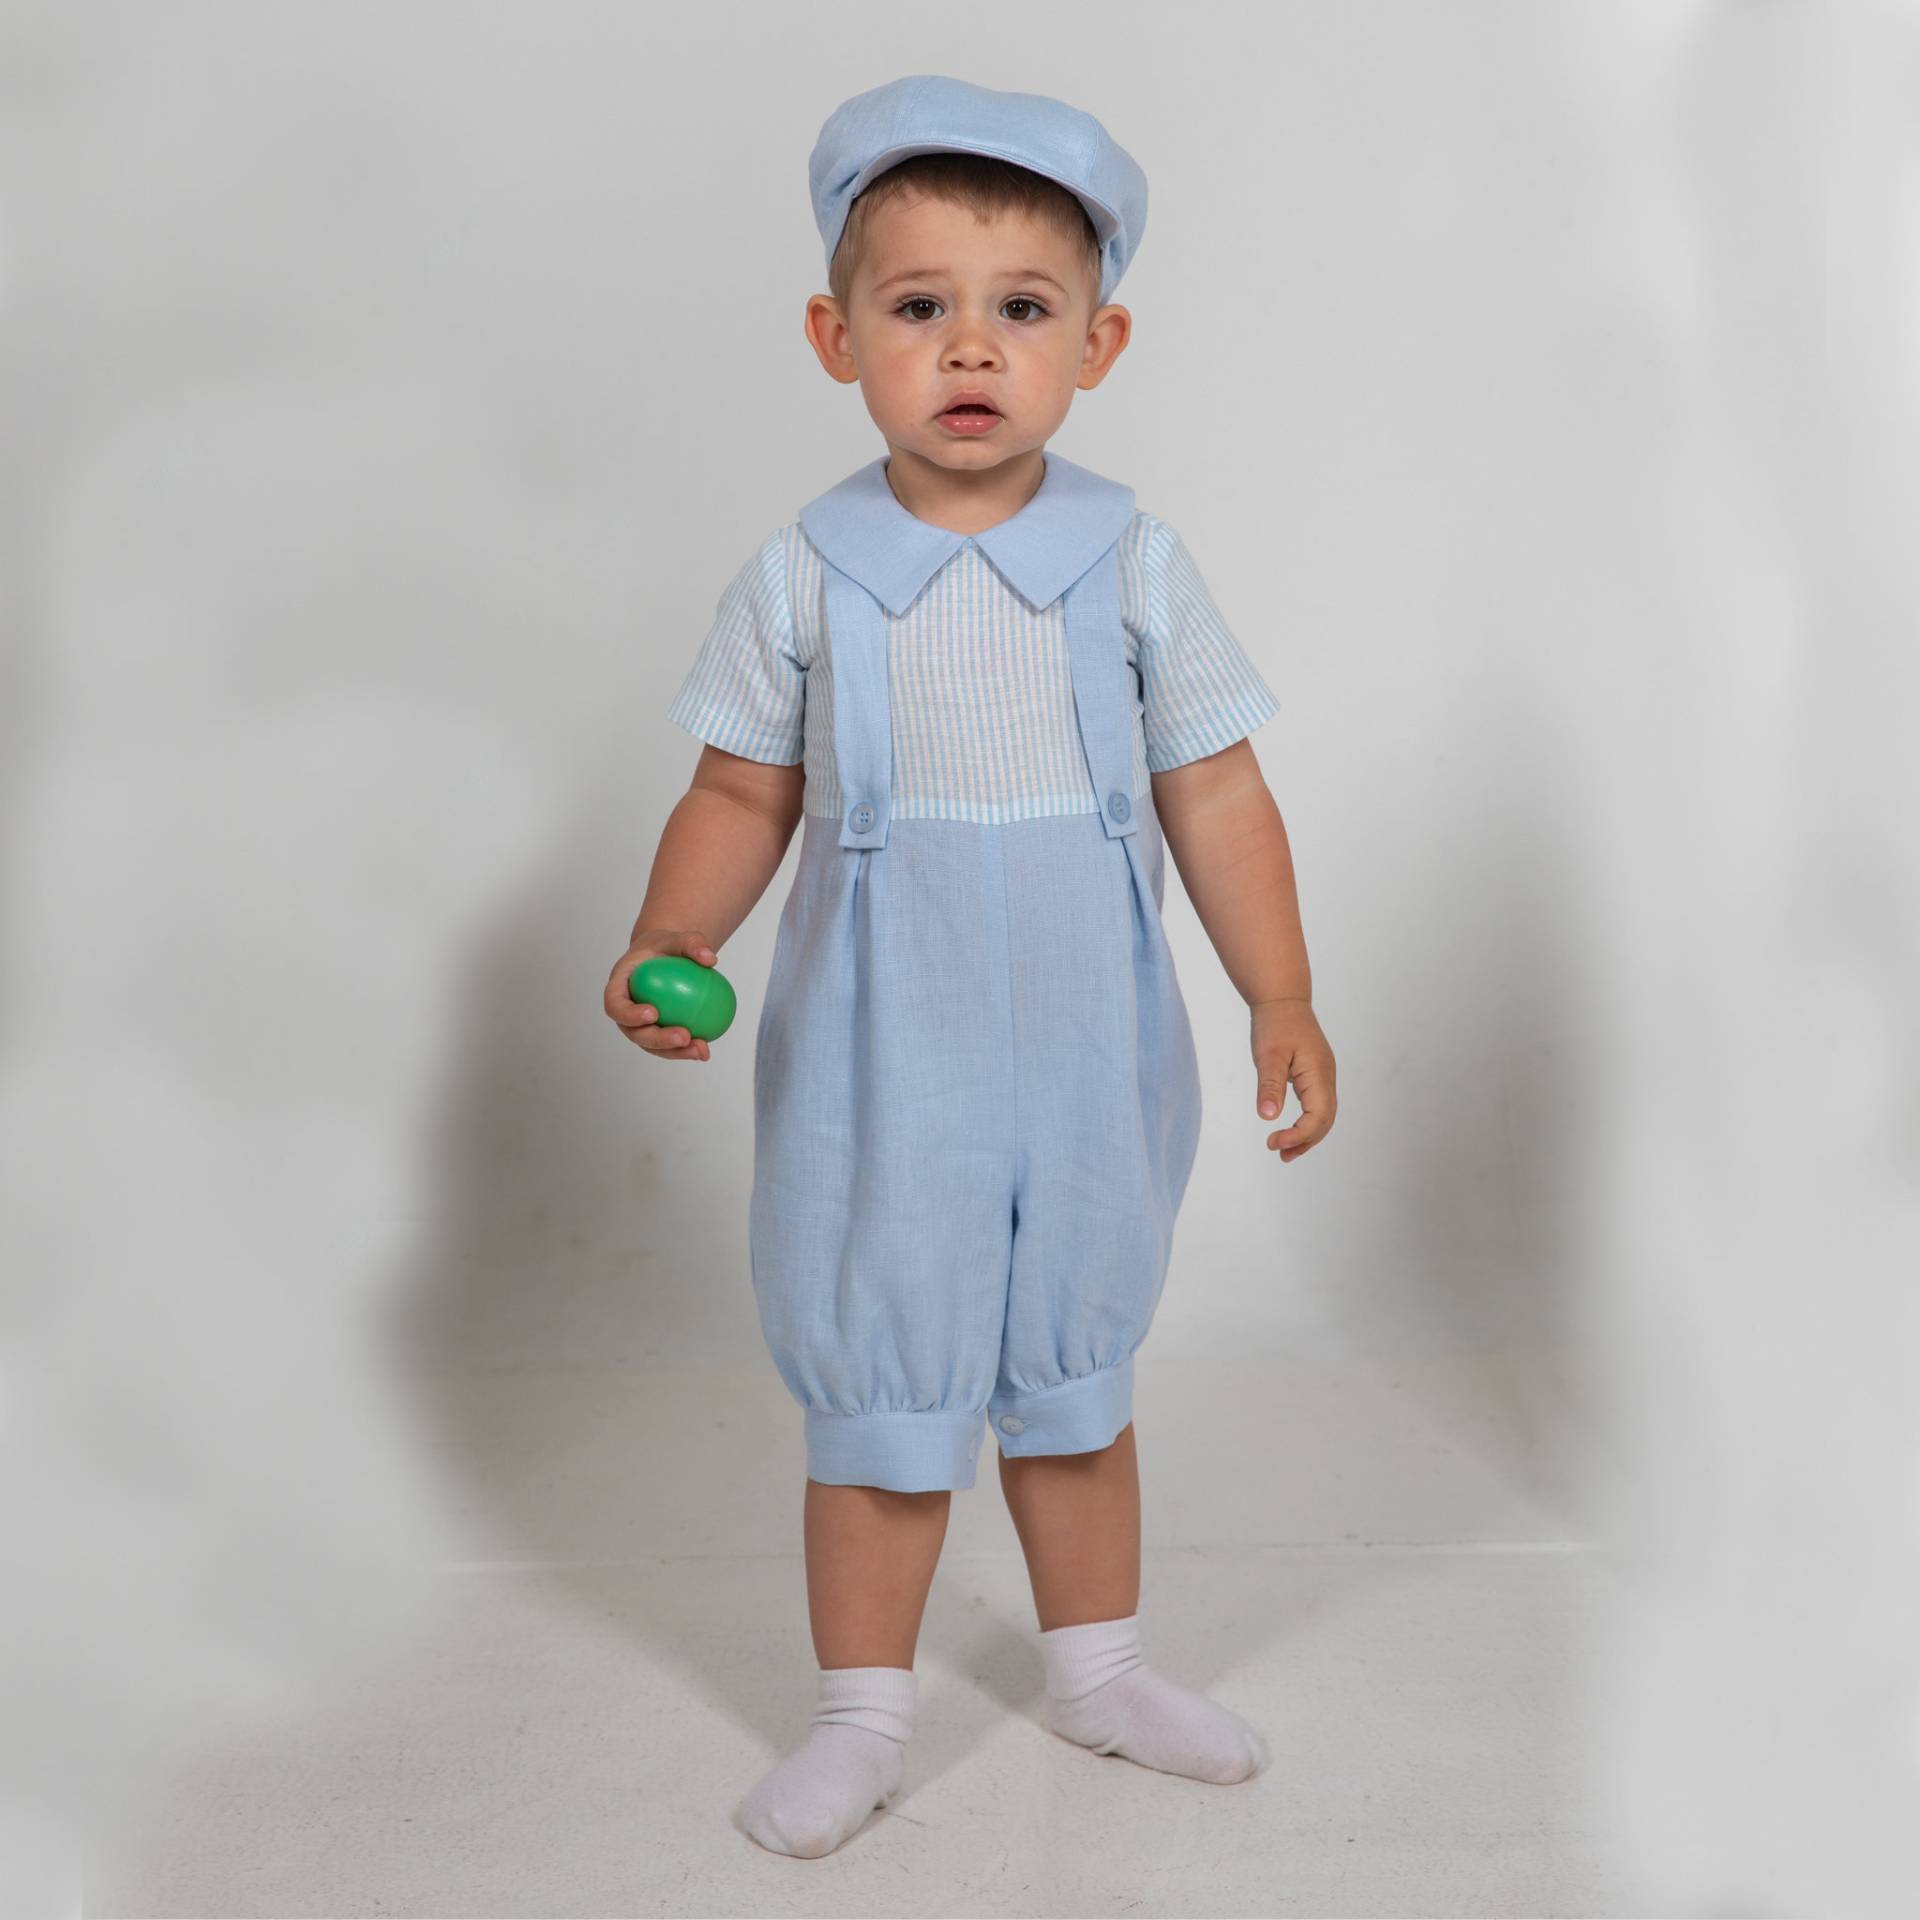 Baby Hellblau Outfit, Kleinkind Strampler + Mütze, Taufanzug, Leinen Mit Hosenträgern, Overall, Overall von Graccia